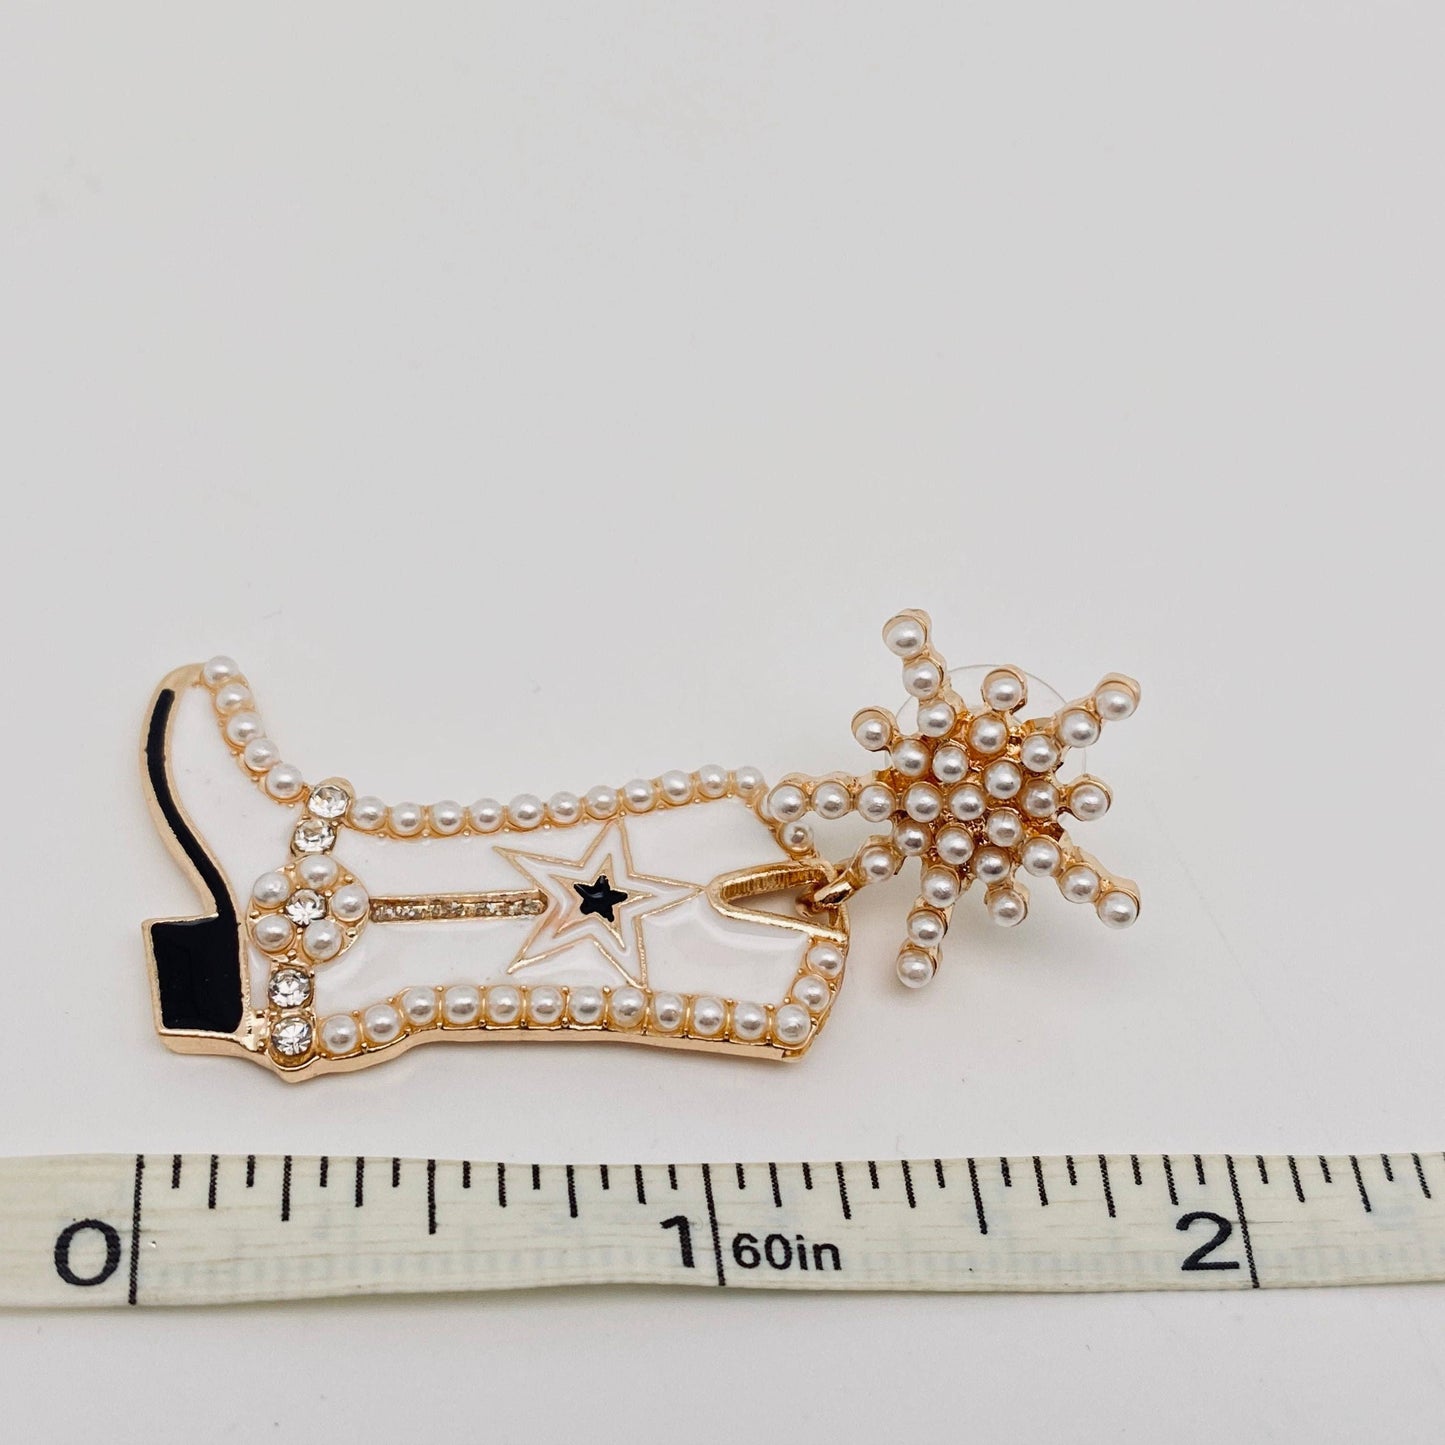 Creative Snowflake Enamel Boots Earrings: Gold